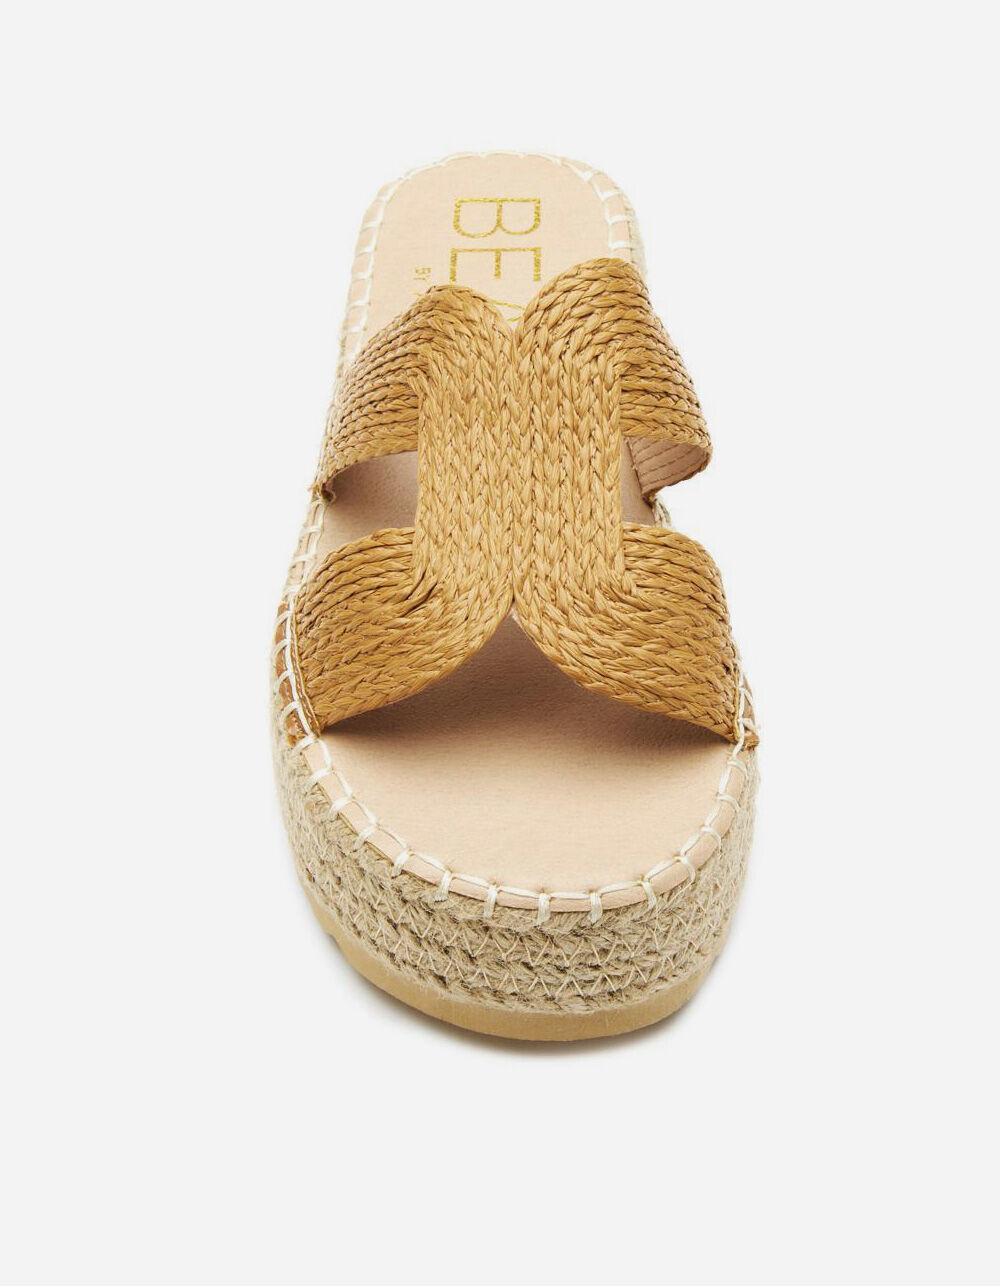 BEACH BY MATISSE Cool Off Womens Tan Platform Sandals - TAN | Tillys